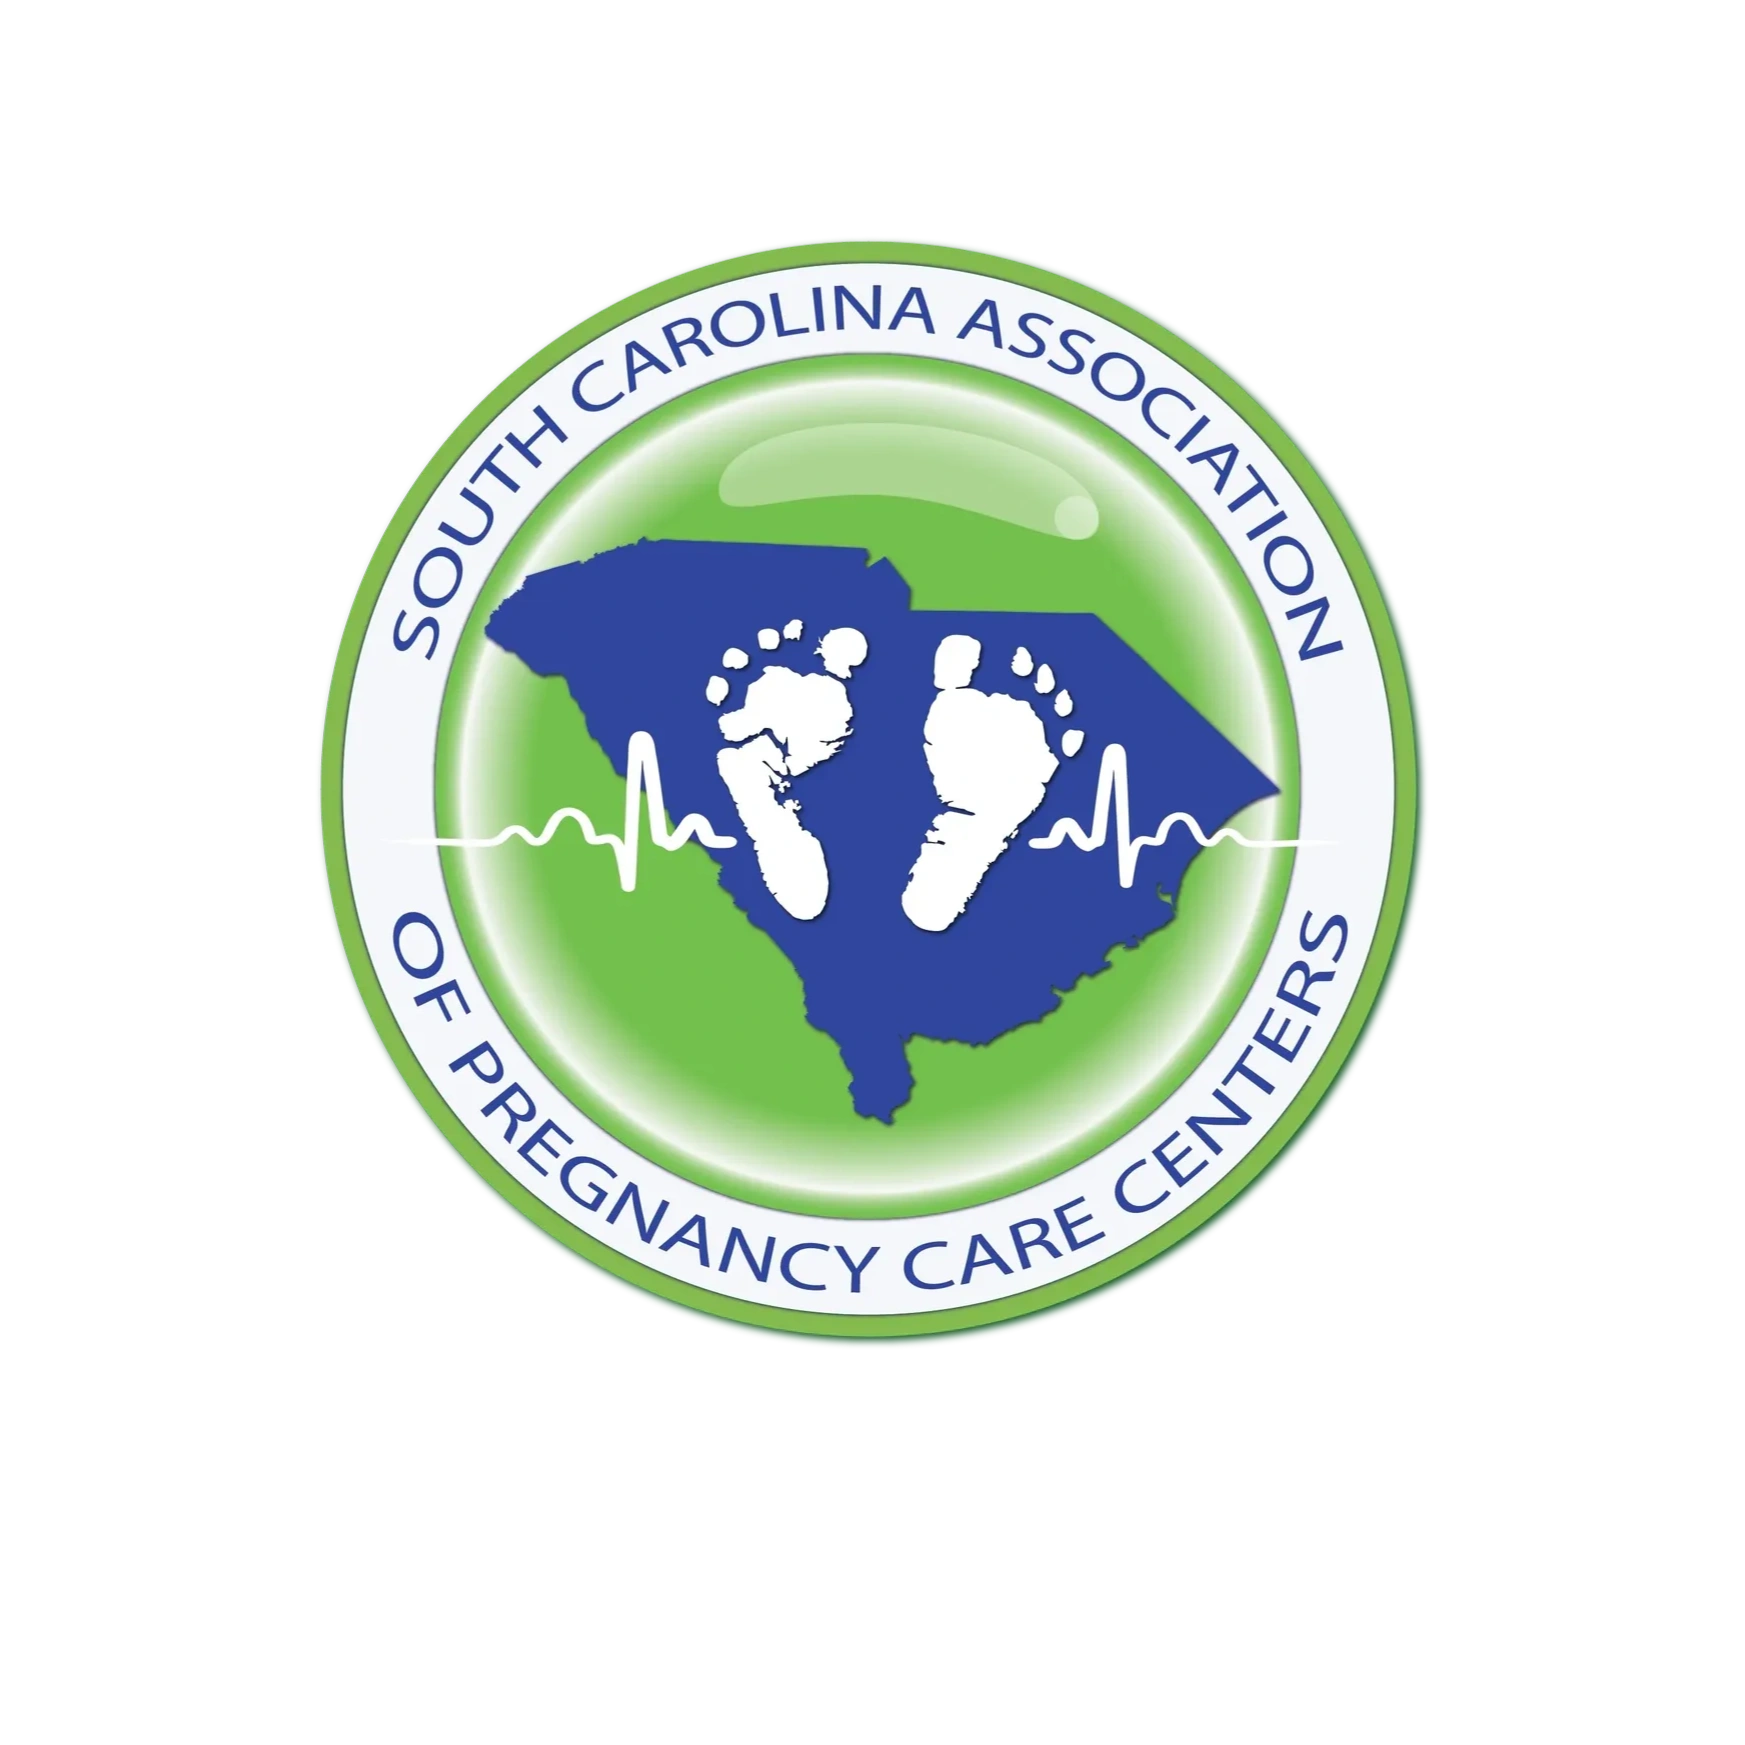 South Carolina Assocation of Pregnancy Care Centers logo